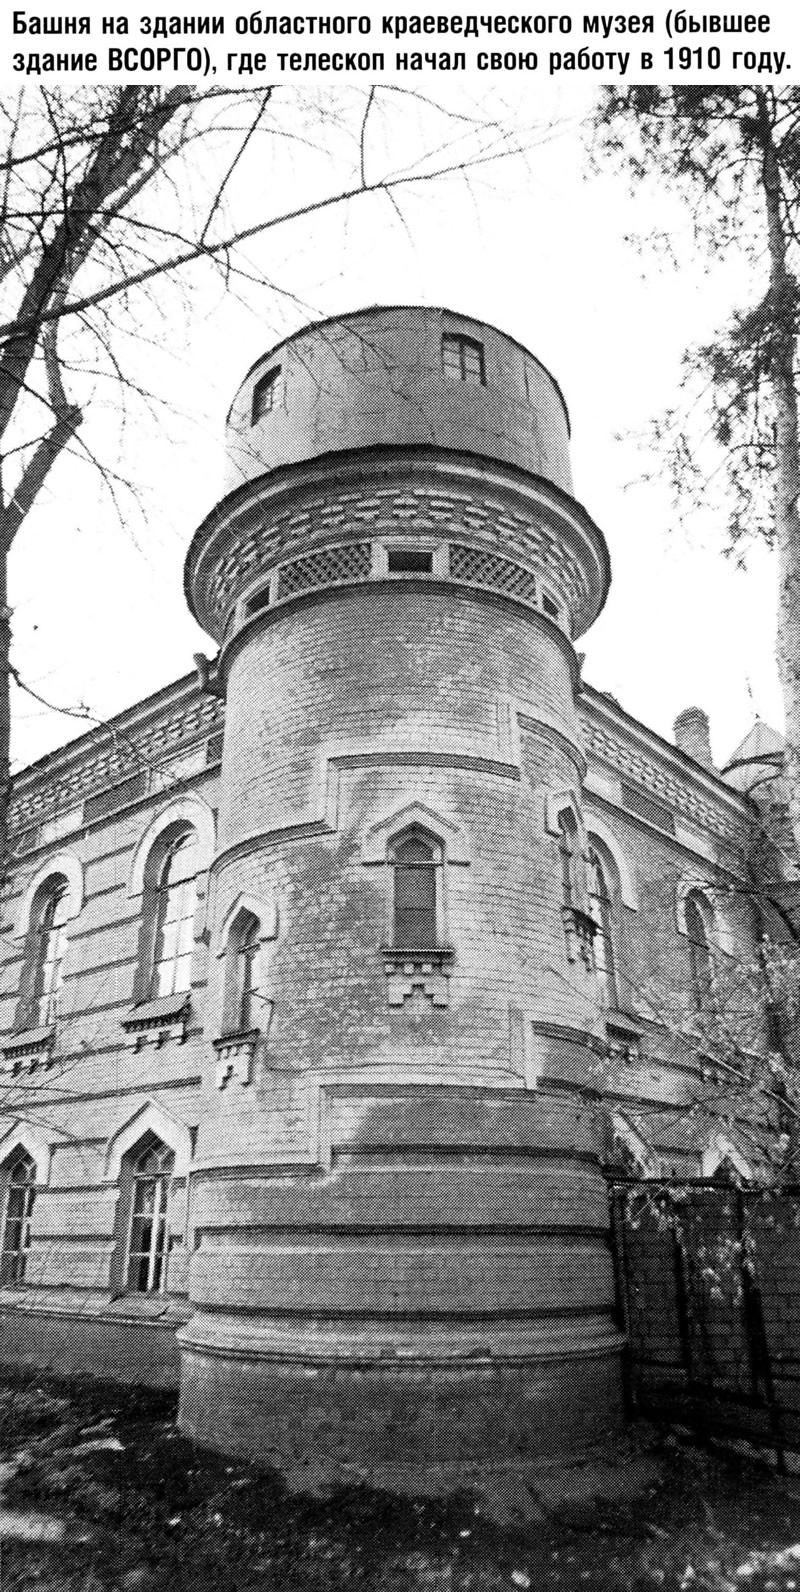 Башня на здании областного краеведческого музея